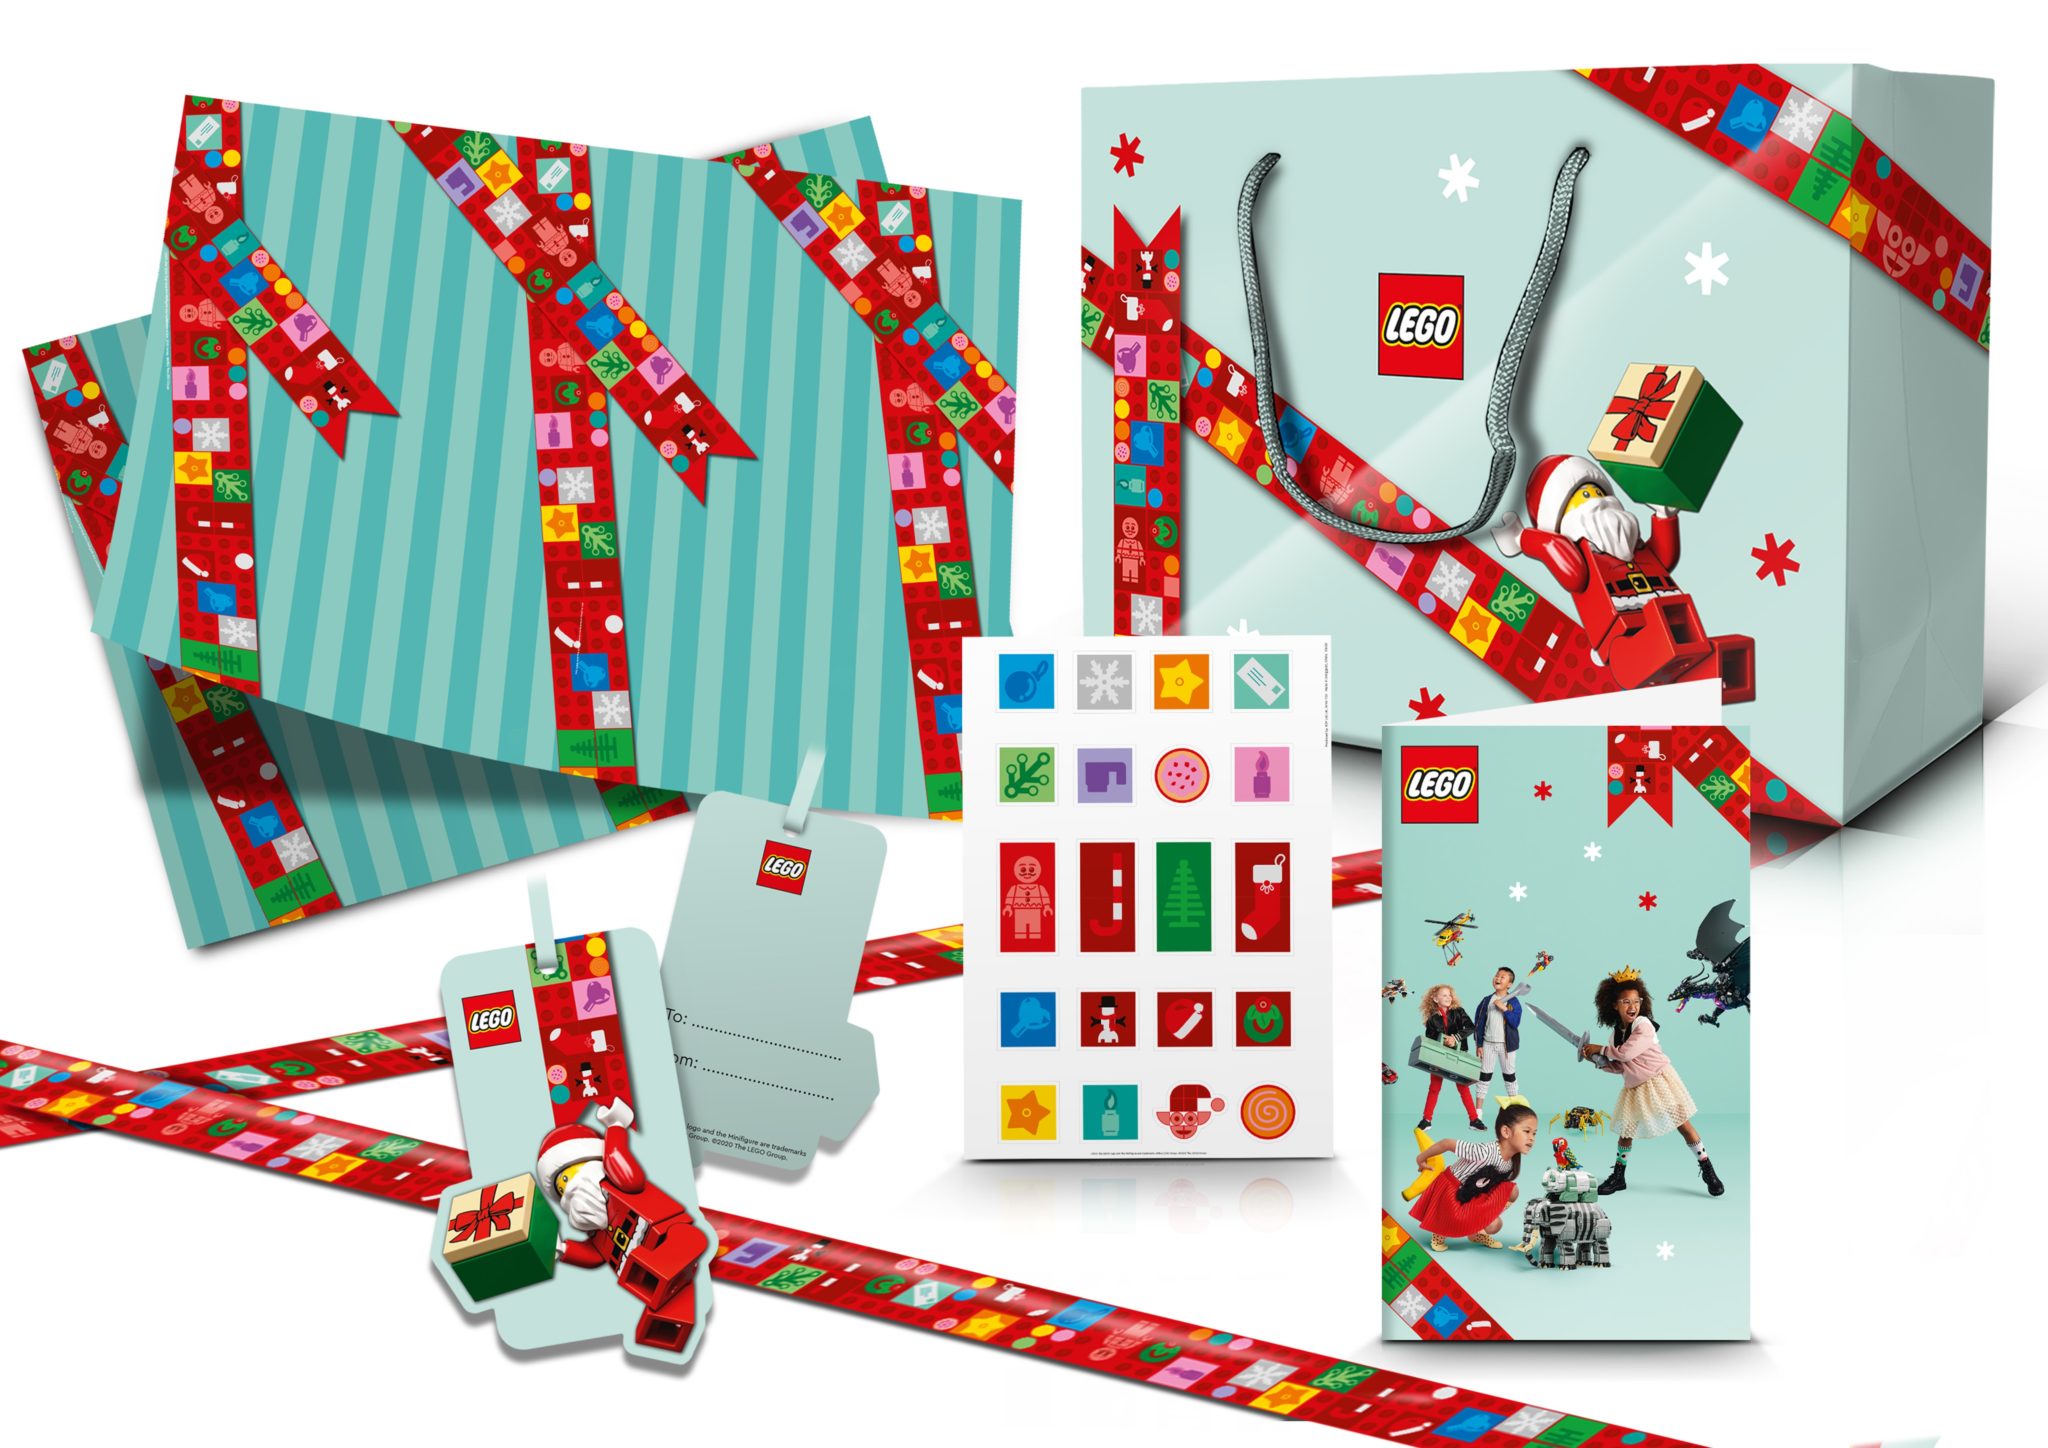 LEGO 5006482 Holiday Gift Set